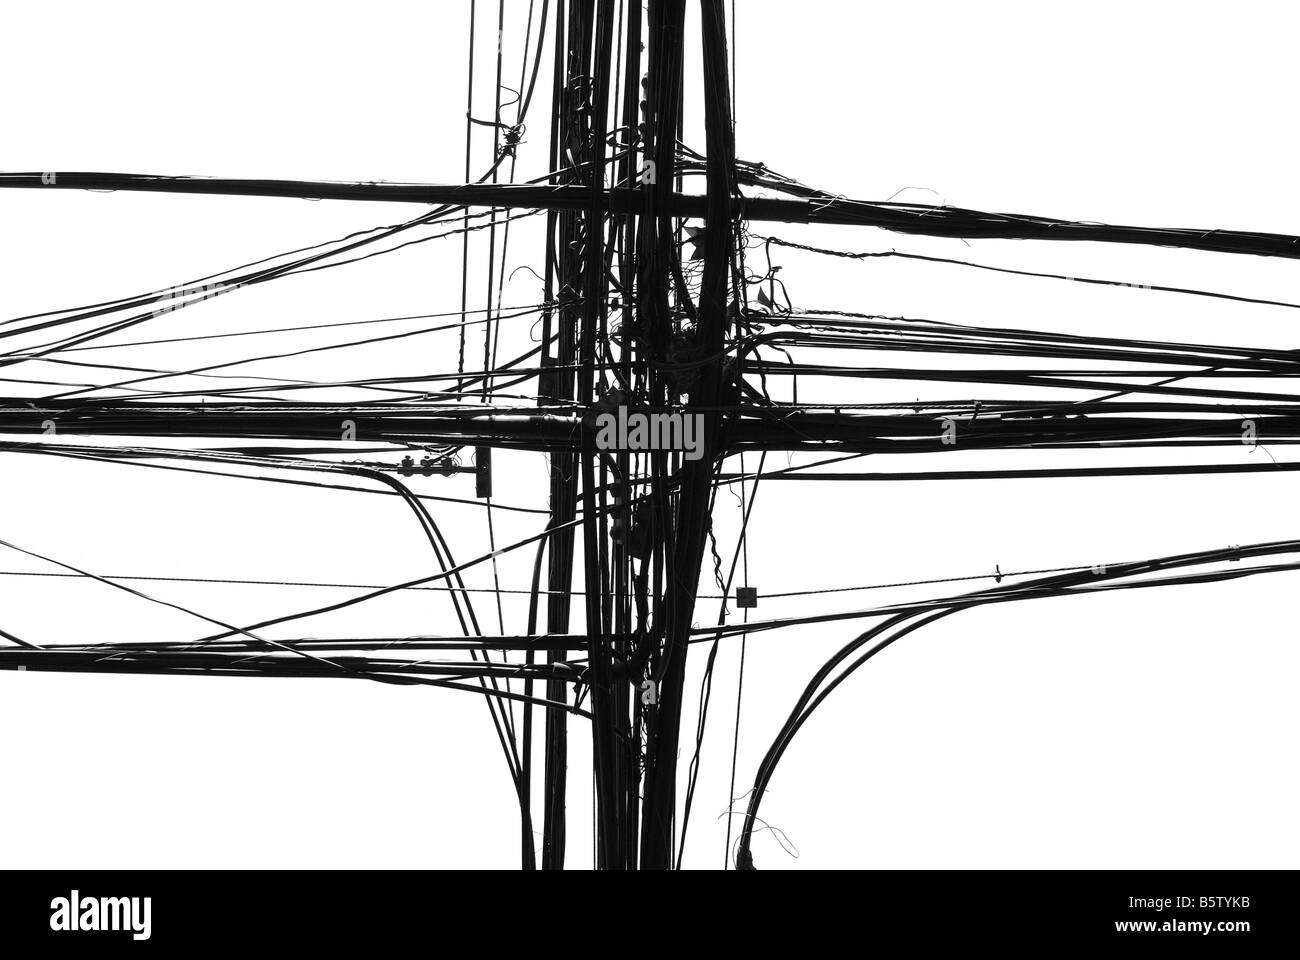 Obenliegende Telekommunikations- und Stromleitungen in Santiago, Chile. Stockfoto